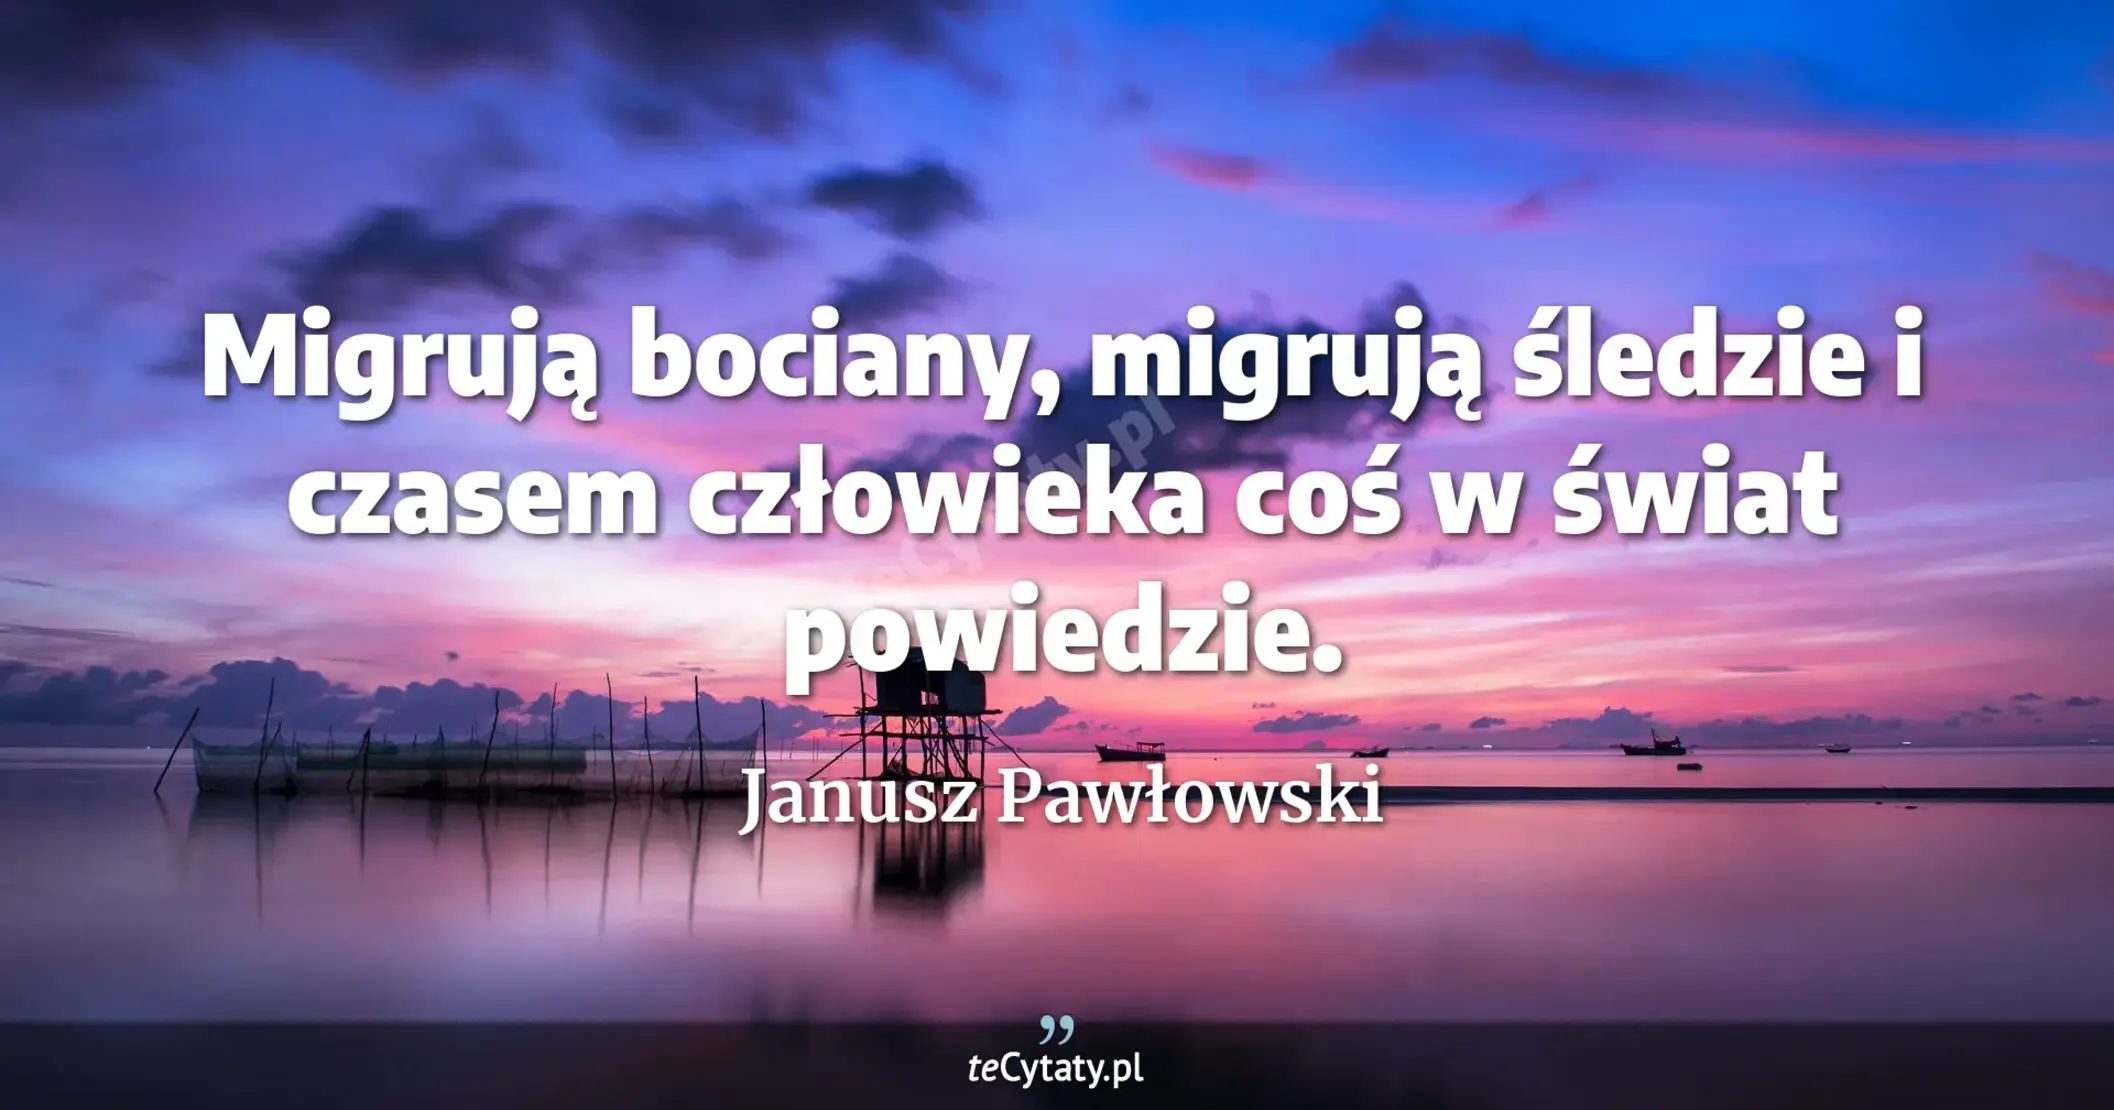 Migrują bociany, migrują śledzie i czasem człowieka coś w świat powiedzie. - Janusz Pawłowski